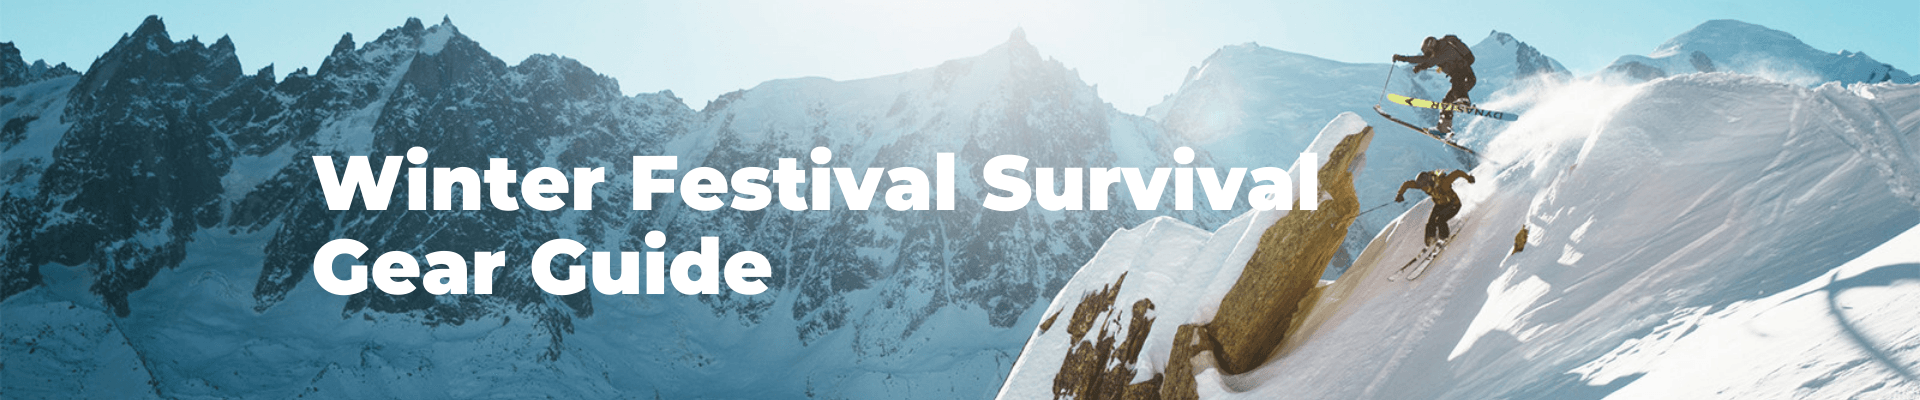 Winter Festival Survival Gear Guide Outside Sports